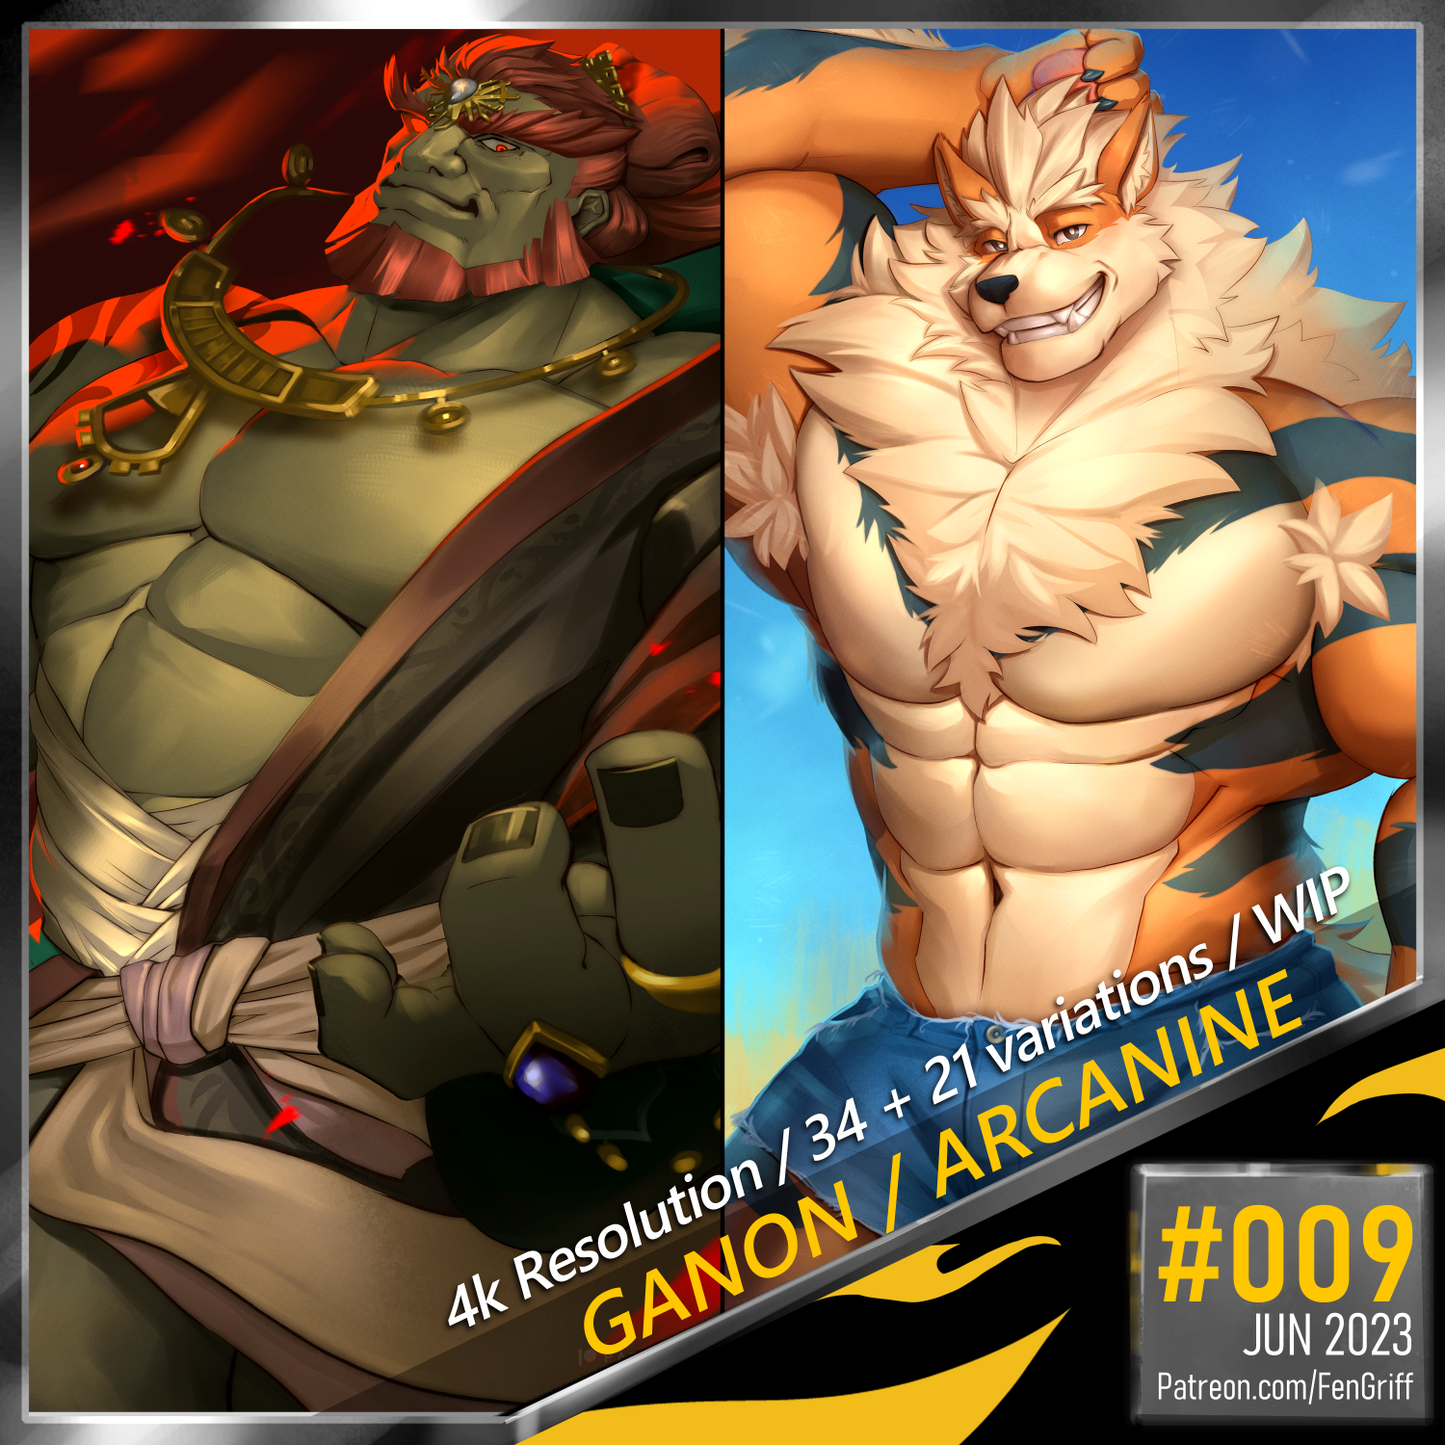 Pack 009: Ganon | Arcanine